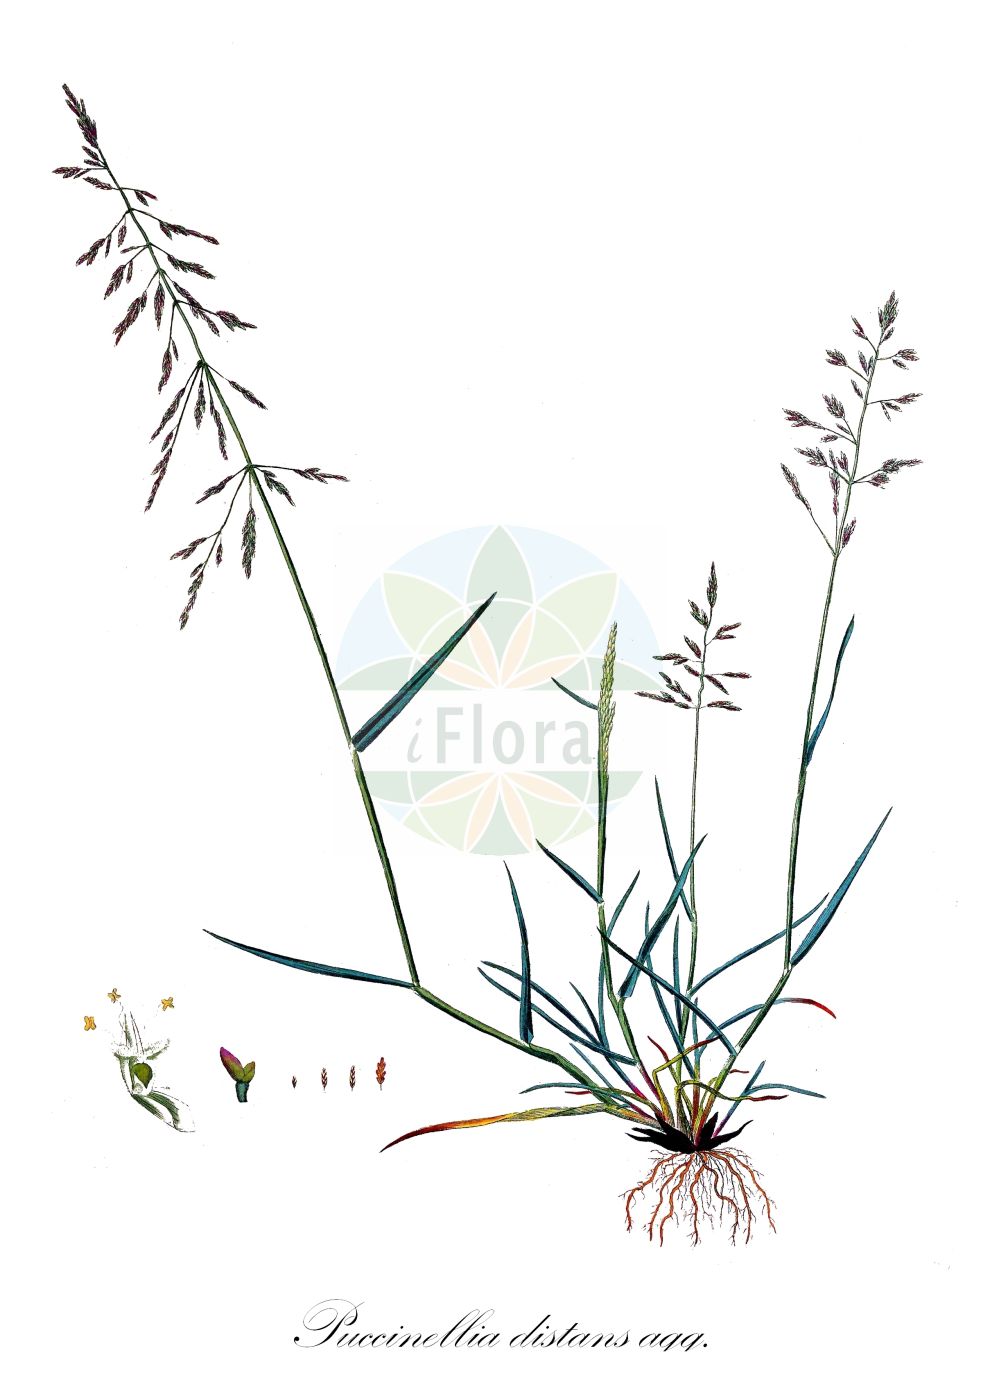 Historische Abbildung von Puccinellia distans agg. (Gewöhnlicher Salzschwaden - Reflexed Saltmarsh-grass). Das Bild zeigt Blatt, Bluete, Frucht und Same. ---- Historical Drawing of Puccinellia distans agg. (Gewöhnlicher Salzschwaden - Reflexed Saltmarsh-grass). The image is showing leaf, flower, fruit and seed.(Puccinellia distans agg.,Gewöhnlicher Salzschwaden,Reflexed Saltmarsh-grass,Gewoehnlicher Salzschwaden,Abstehender Salzschwaden,Ruderal-Salzschwaden,Reflexed Saltmarsh-grass,European Alkaligrass,Reflexed Meadowgrass,Puccinellia,Salzschwaden,Alkaligrass,Poaceae,Süßgräser,Grass family,Blatt,Bluete,Frucht,Same,leaf,flower,fruit,seed,Curtis (1777-1798))